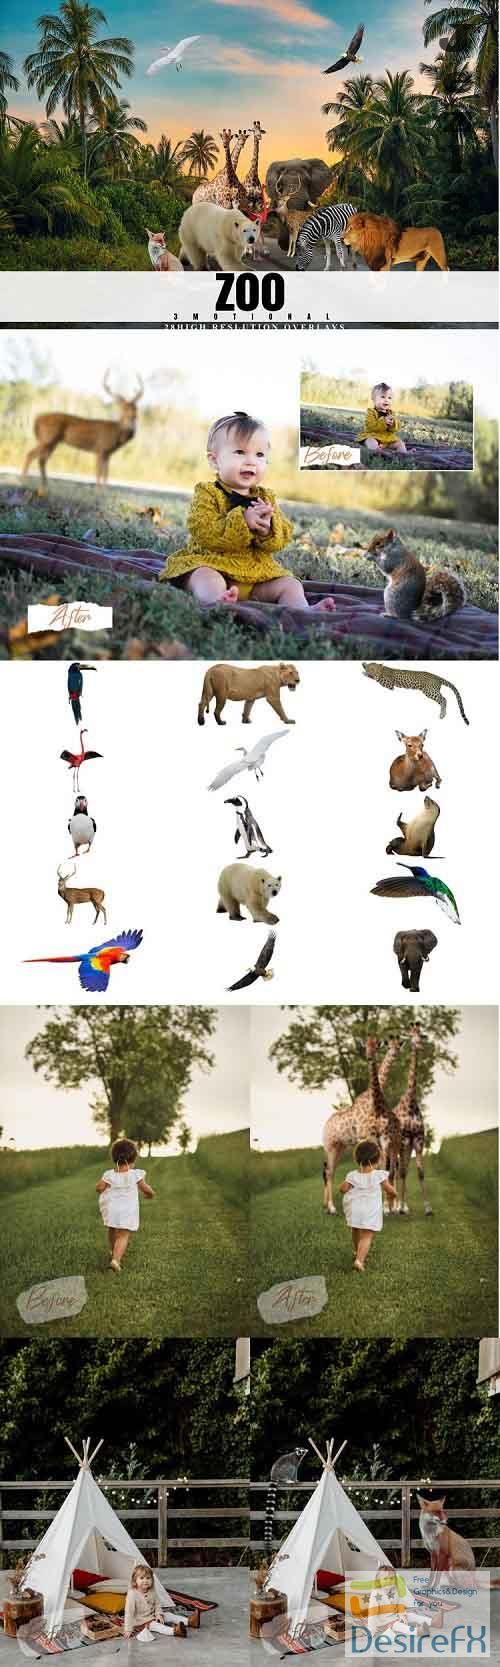 28 Zoo Overlays, Realistic Wild Animal Photoshop Overlay - 643848